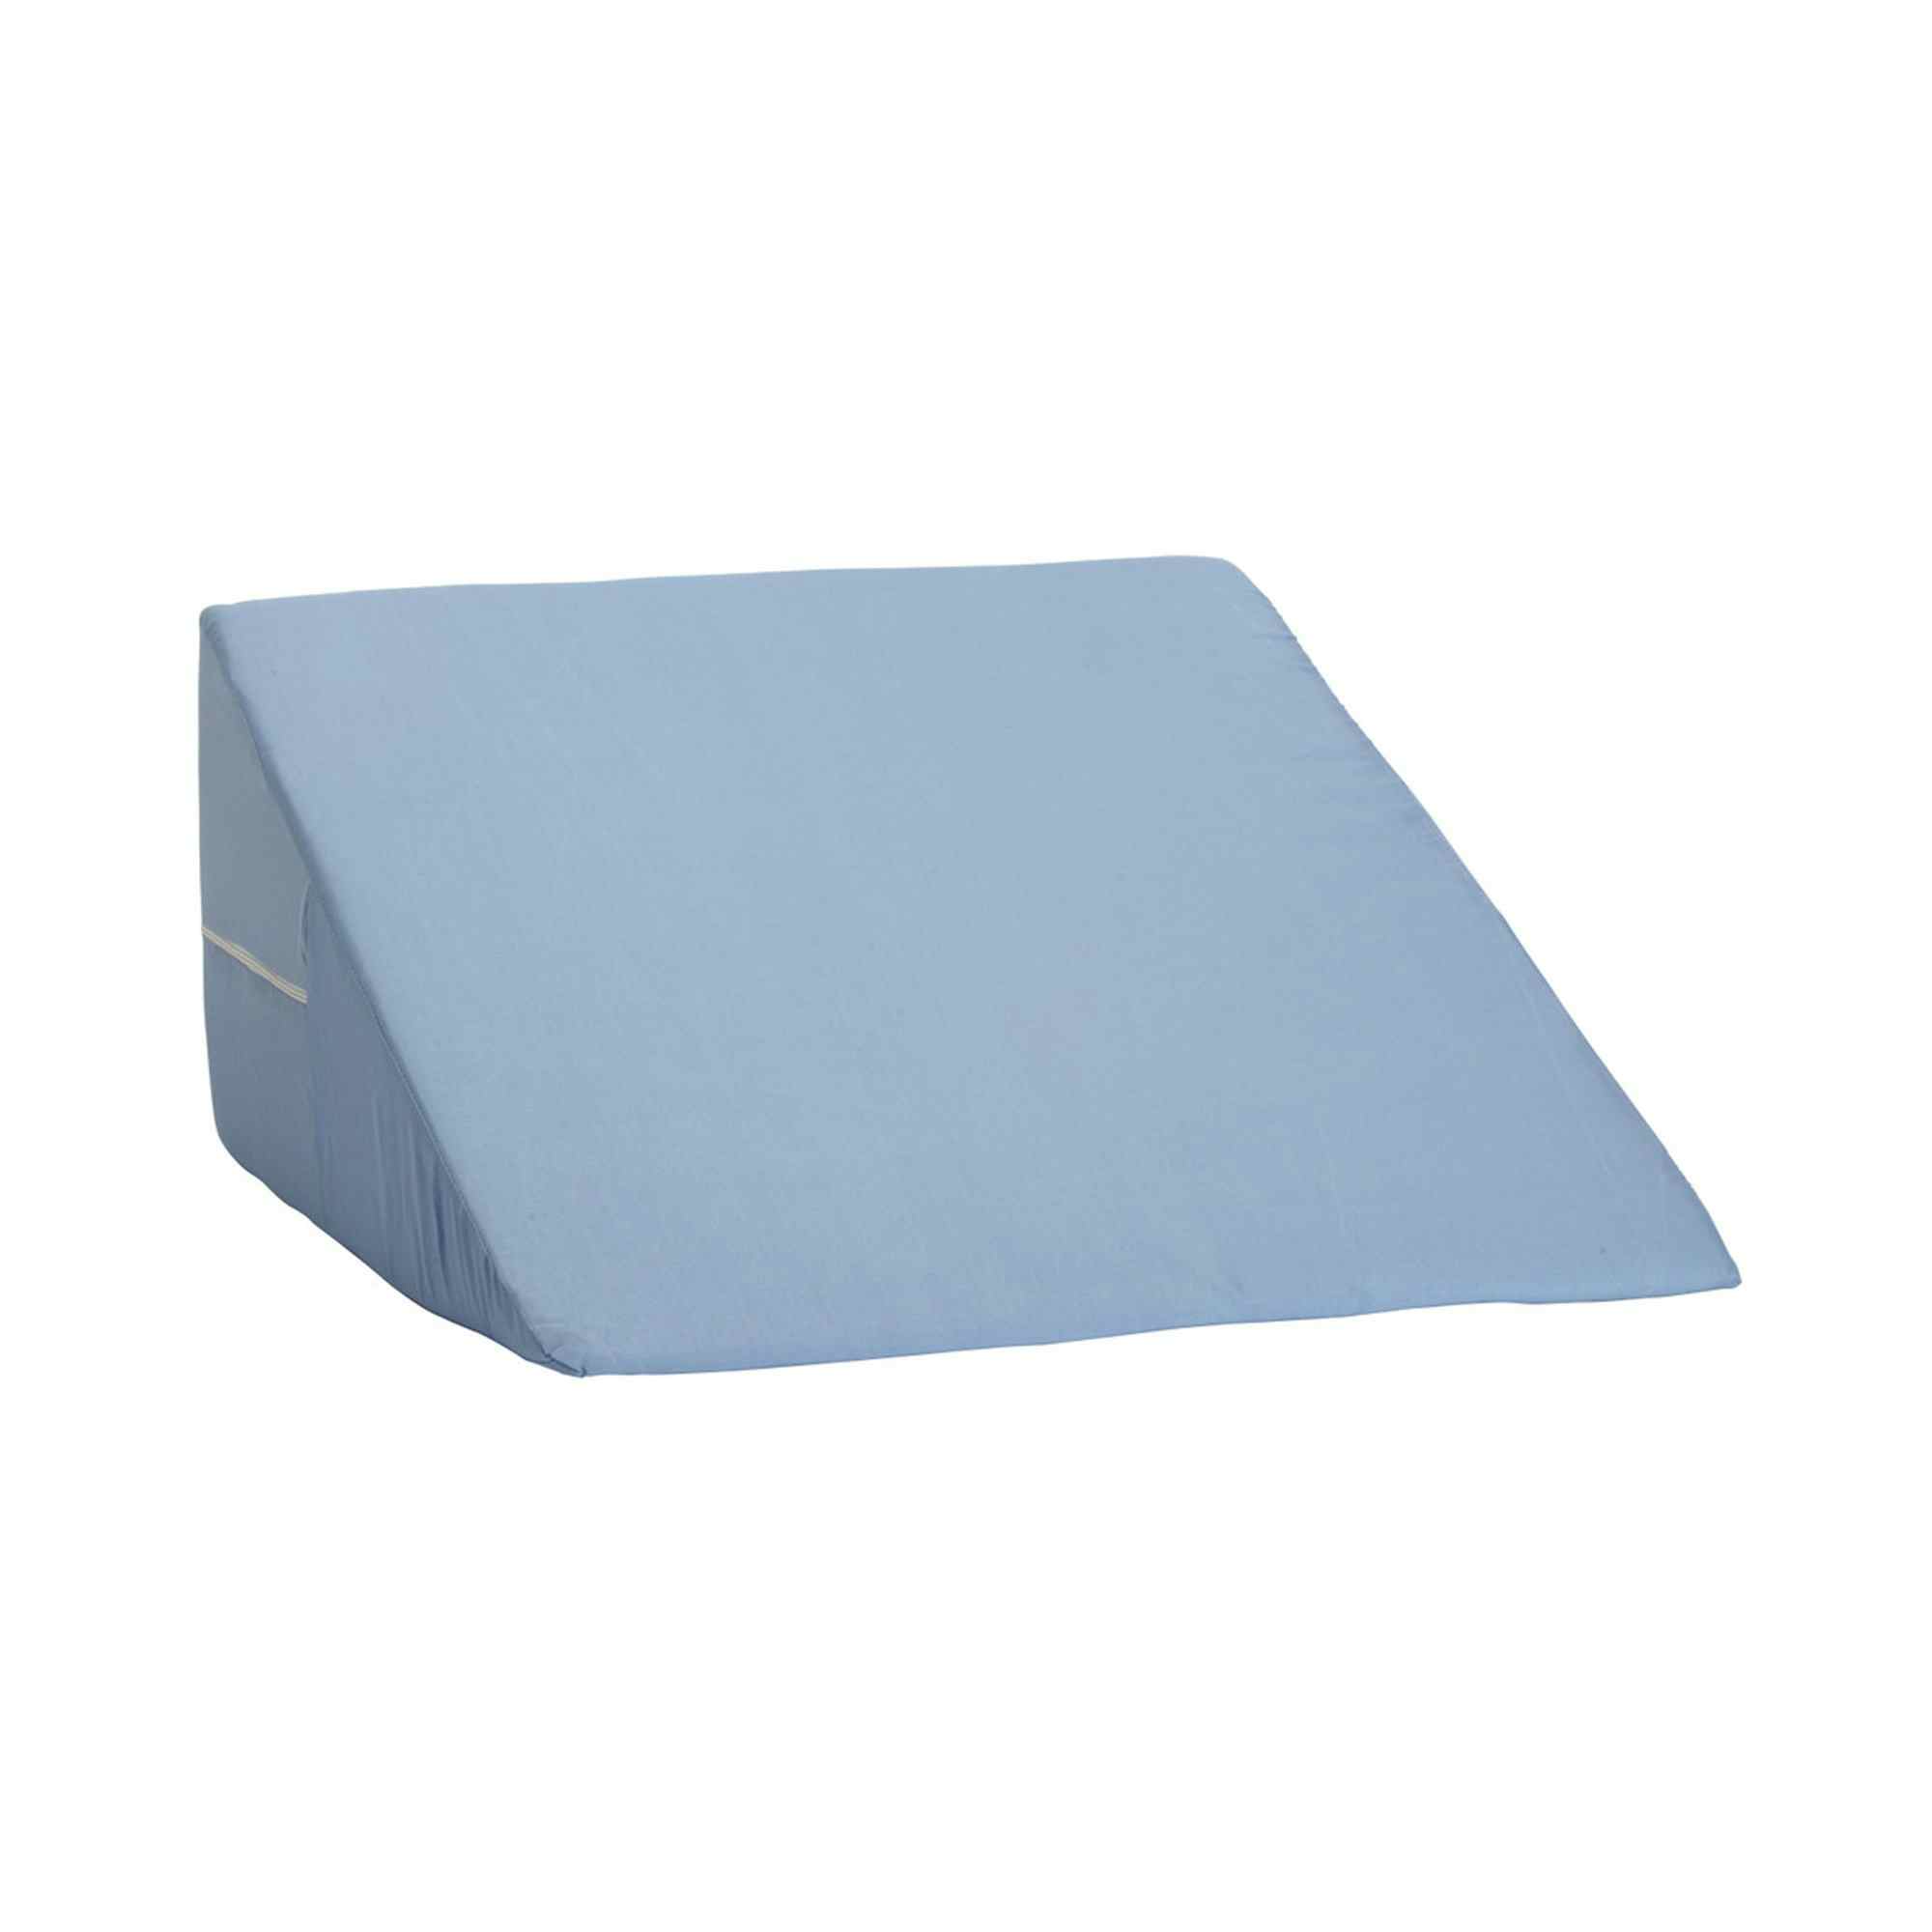 DMI Foam Freestanding Positioning Wedge, 802-8026-0100, Blue 24 in x 24 in x 7 in - 1 Each